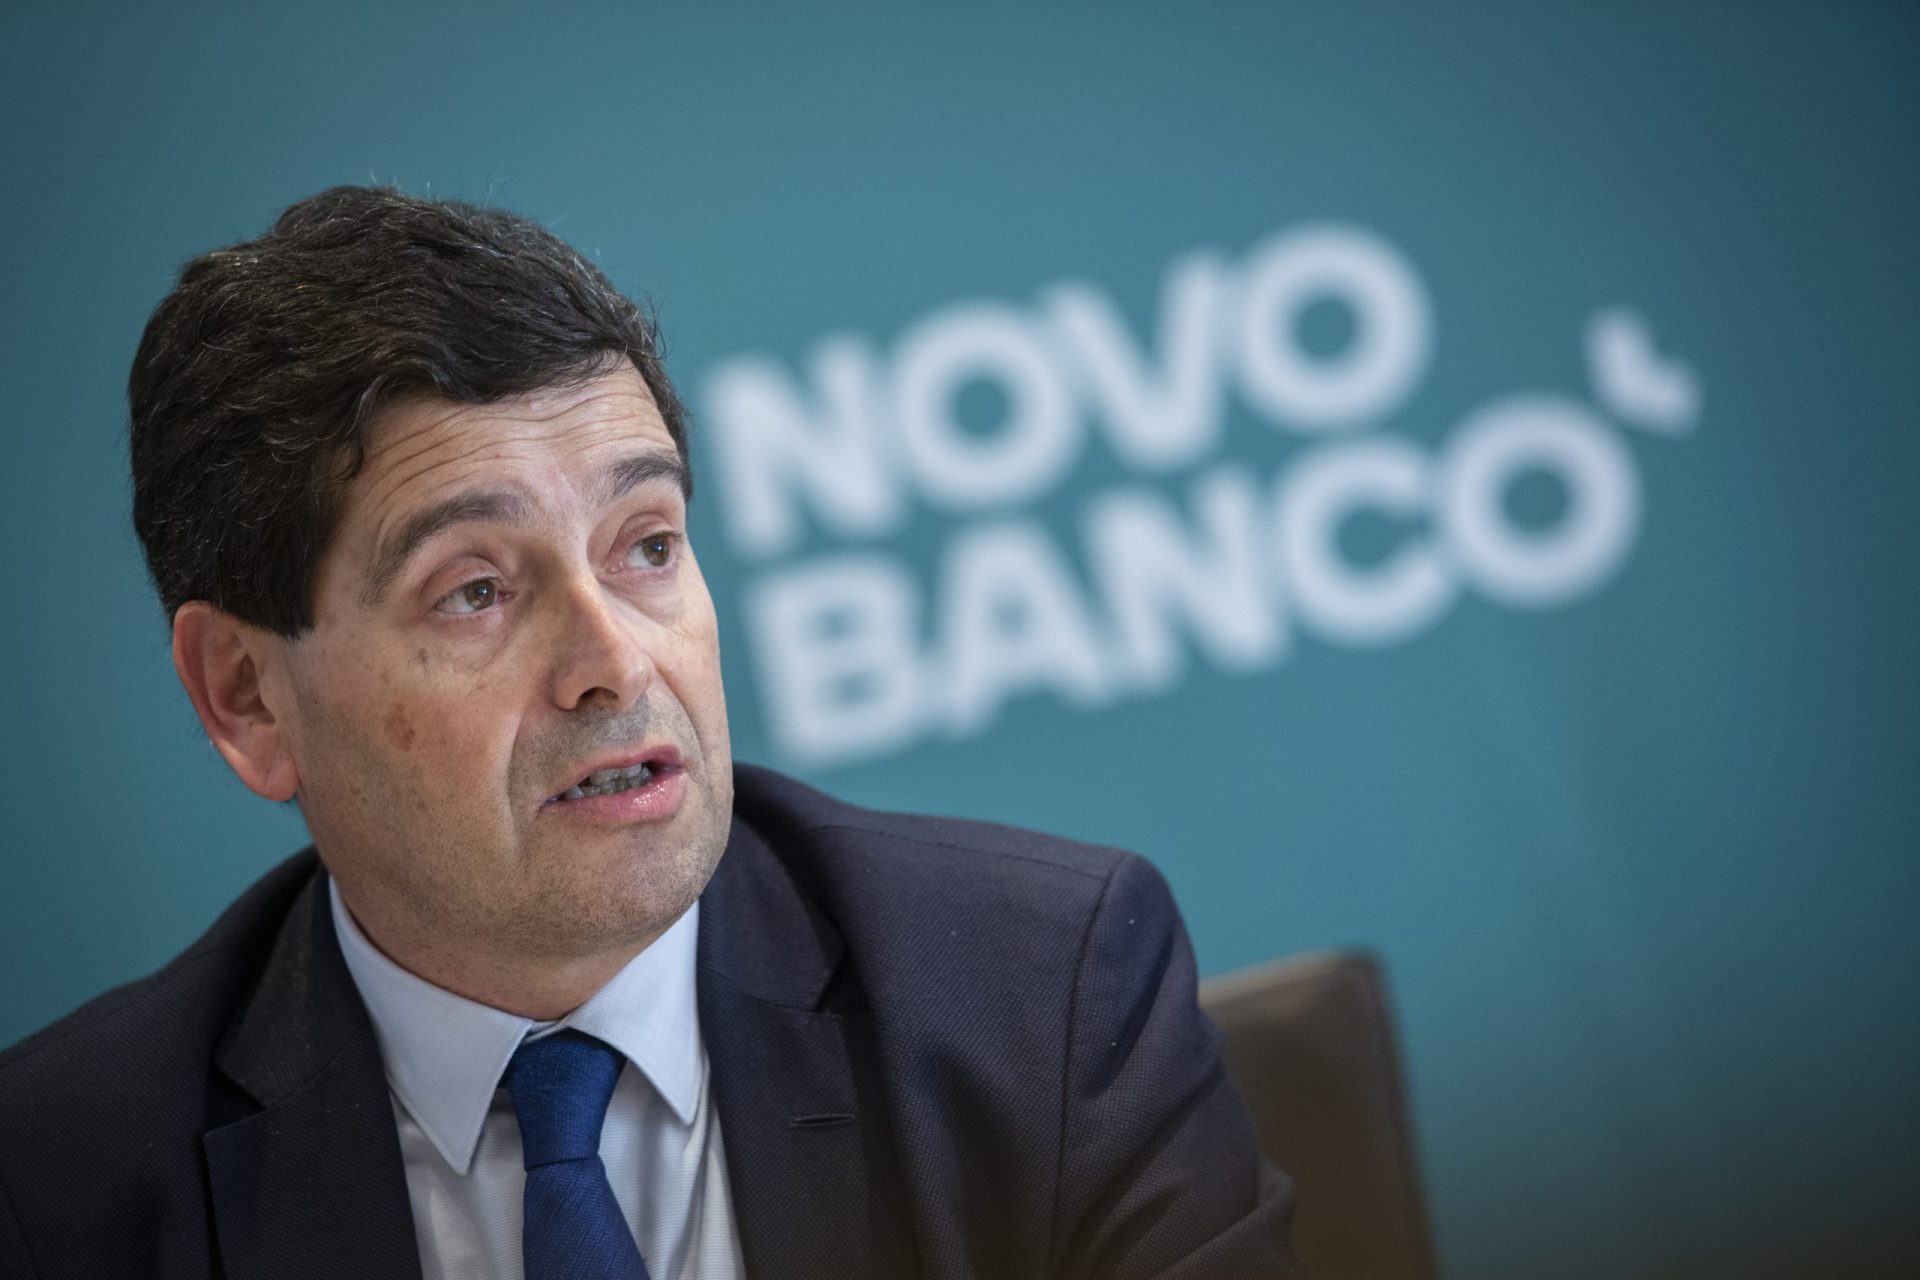 Novobanco. António Ramalho sai da liderança num virar de página